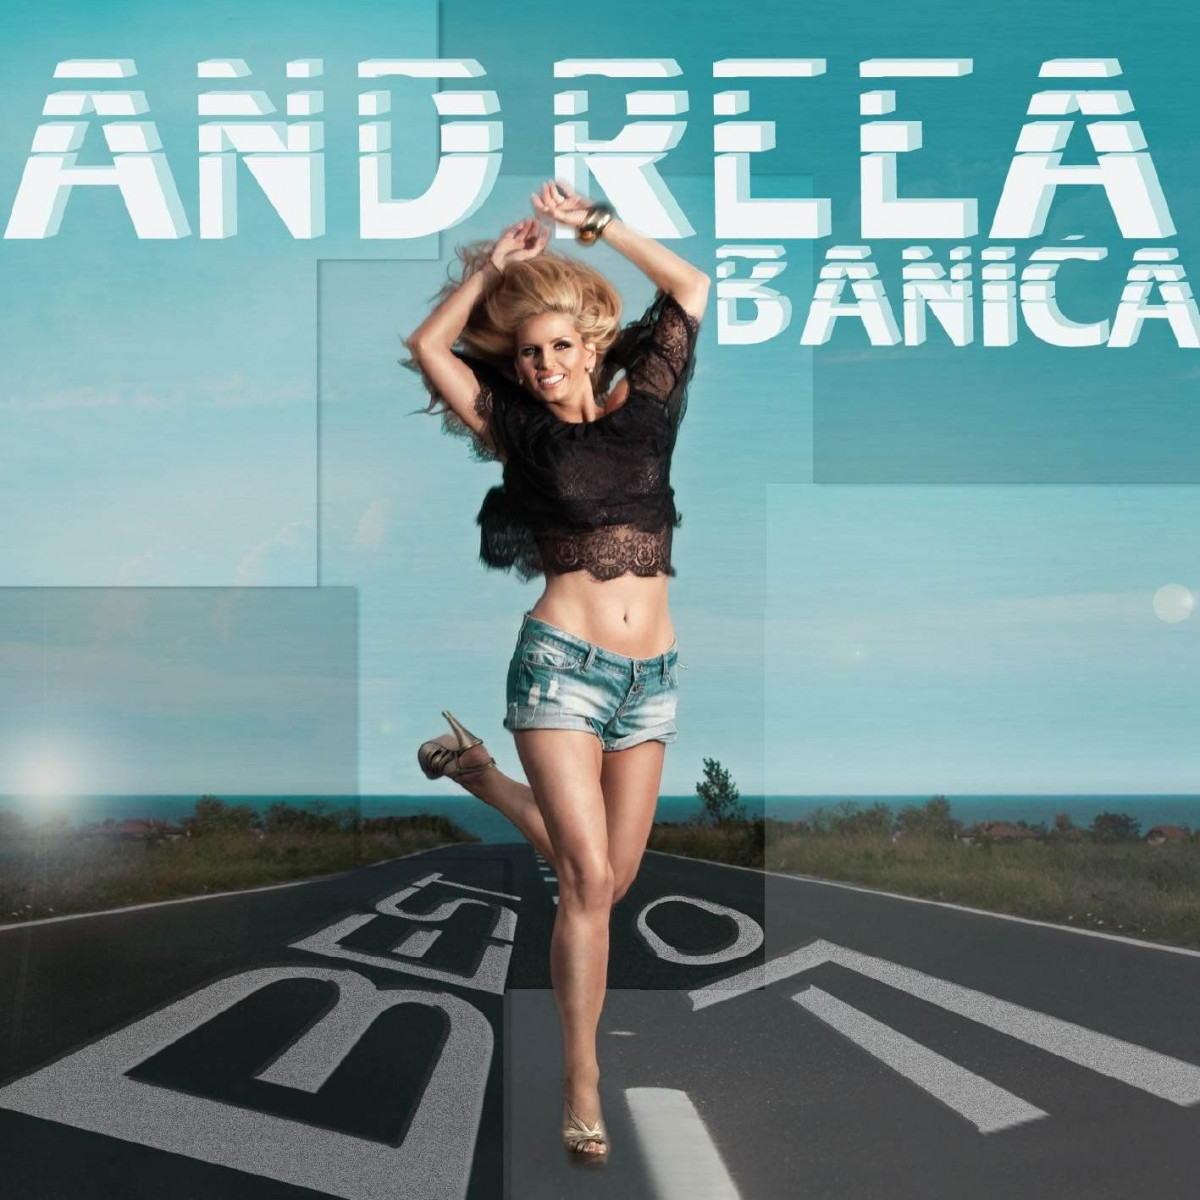 Andreea Banica - Love in Brasil (Radio Edit) (2011)